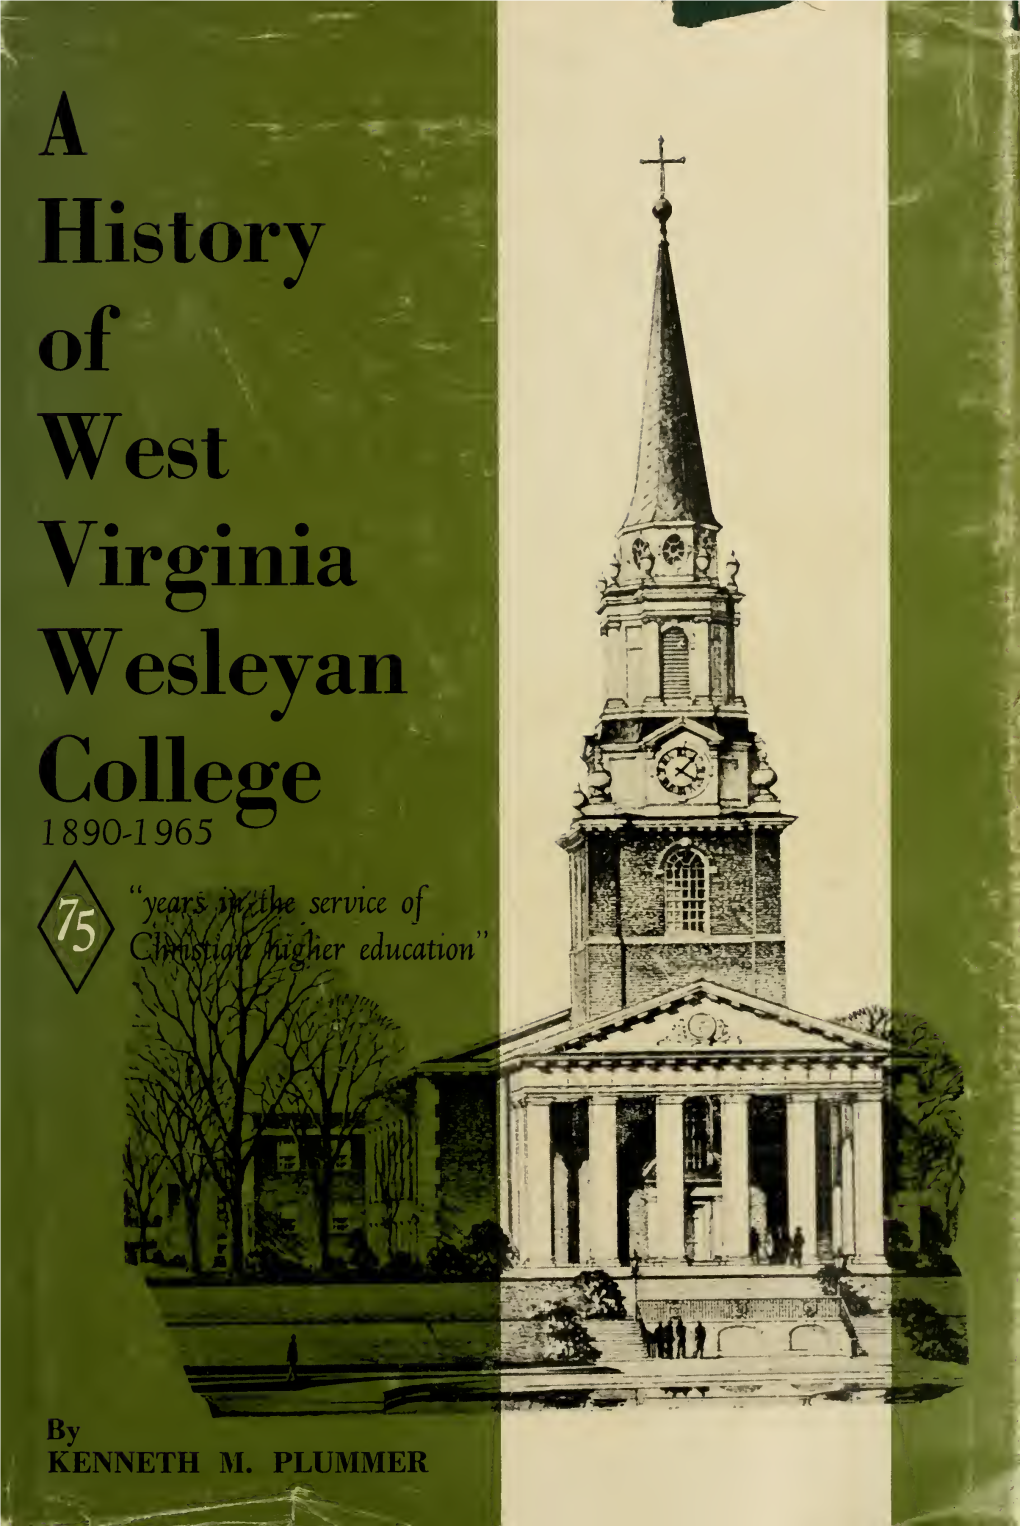 A History of West Virginia Wesleyan College, 1890-1965